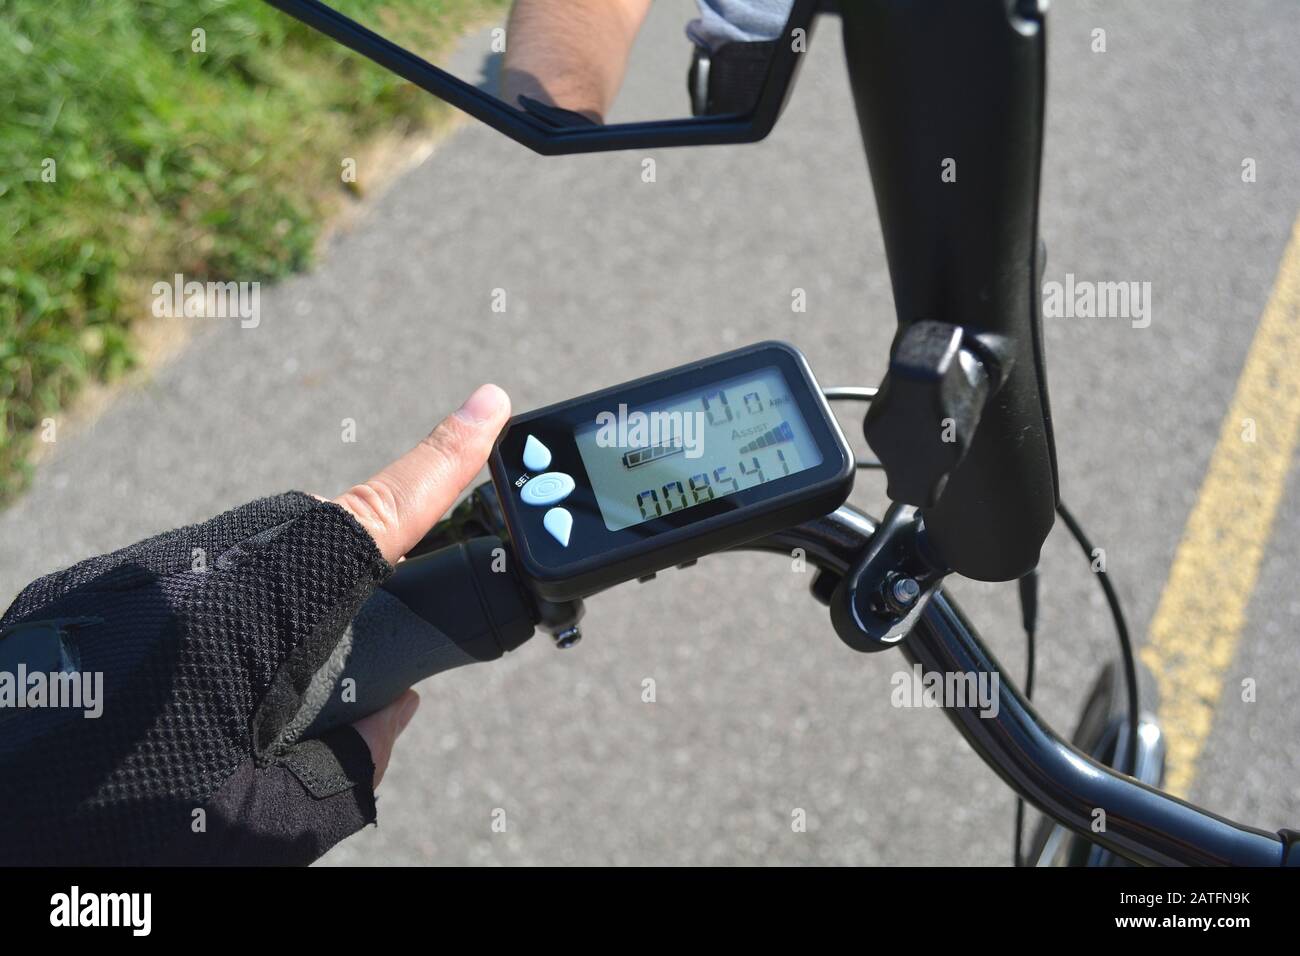 Mann schaltet sich mit Elektro-Bike oder E-Bike ein. Bord-Display mit modernem E-Bike. Anzeige von Geschwindigkeit, Leistungsstufe und Distanz in Kilometern. Stockfoto